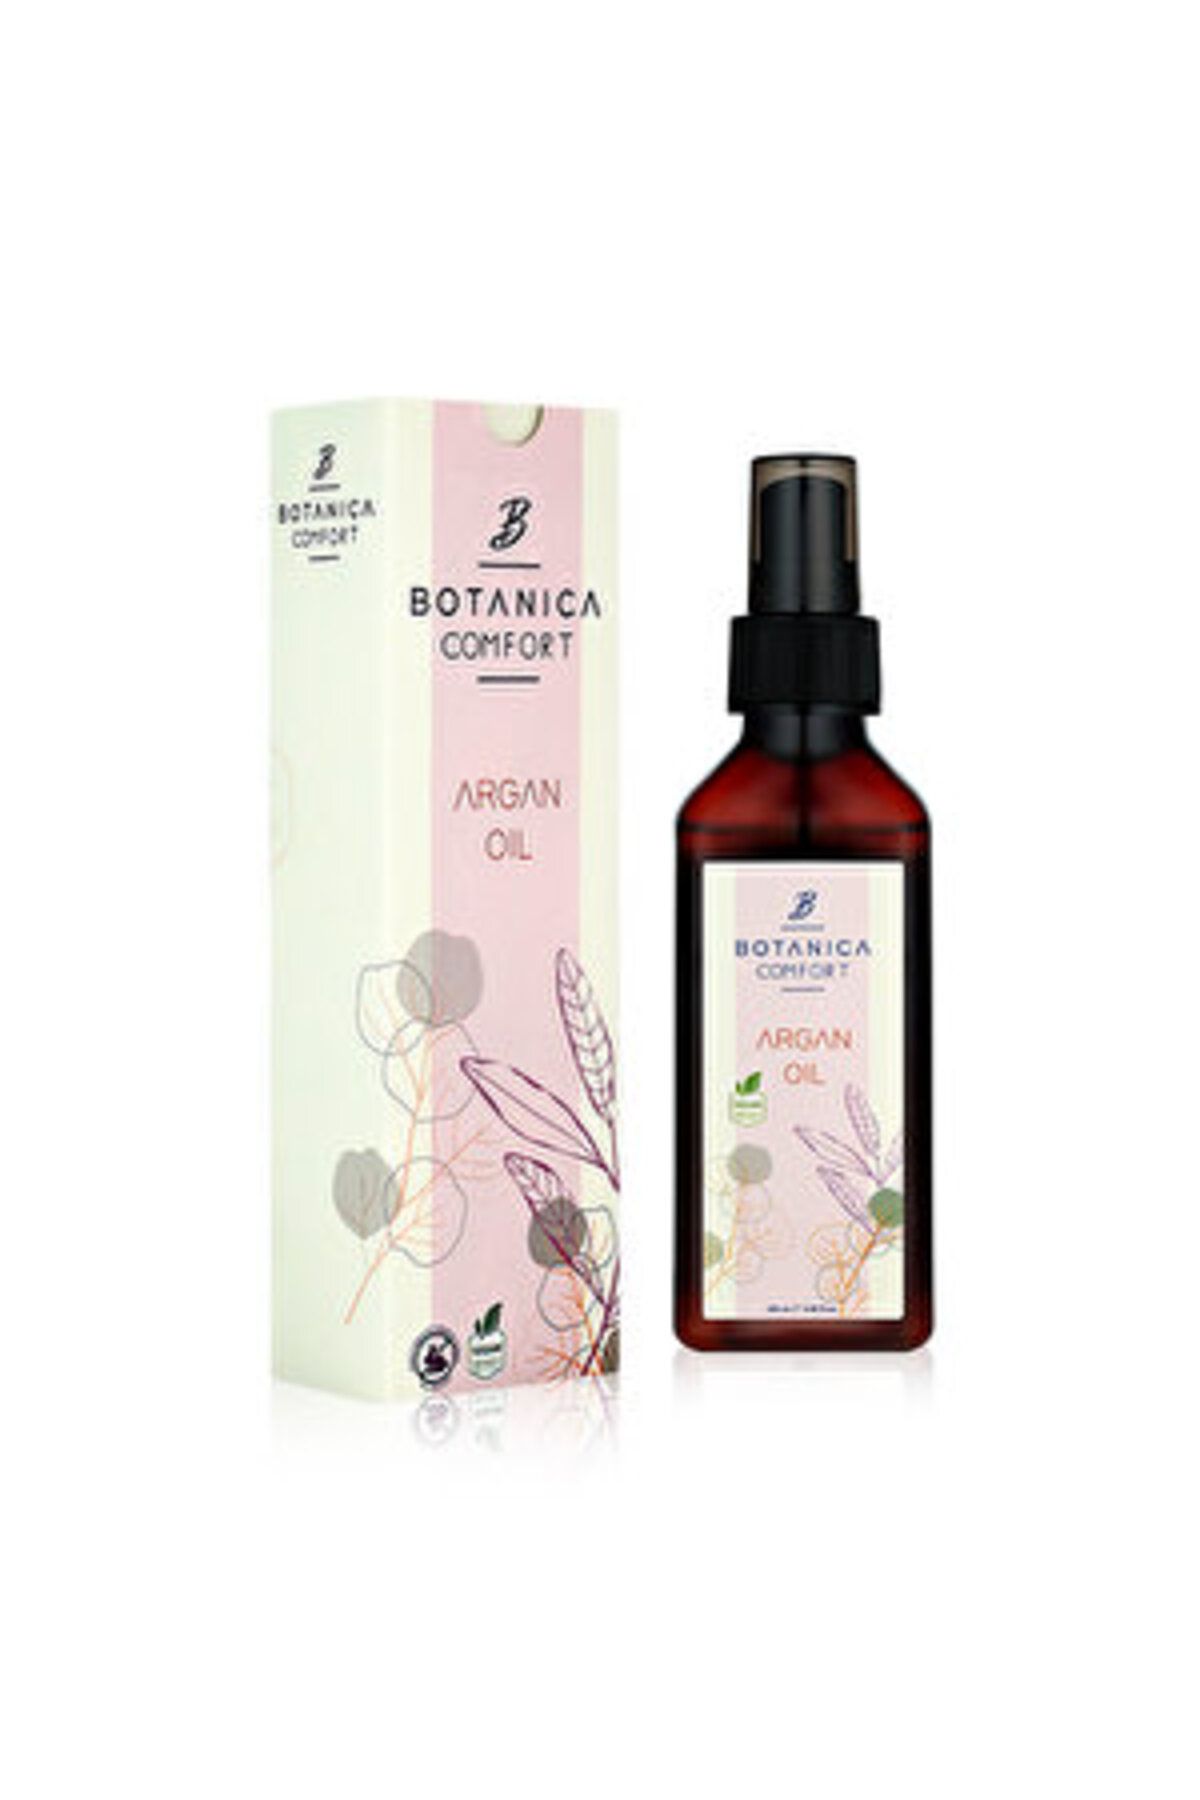 botanica ( FIRÇALIK ) Botanica Comfort Argan Saç Bakım Yağı 100 ml ( 1 ADET )